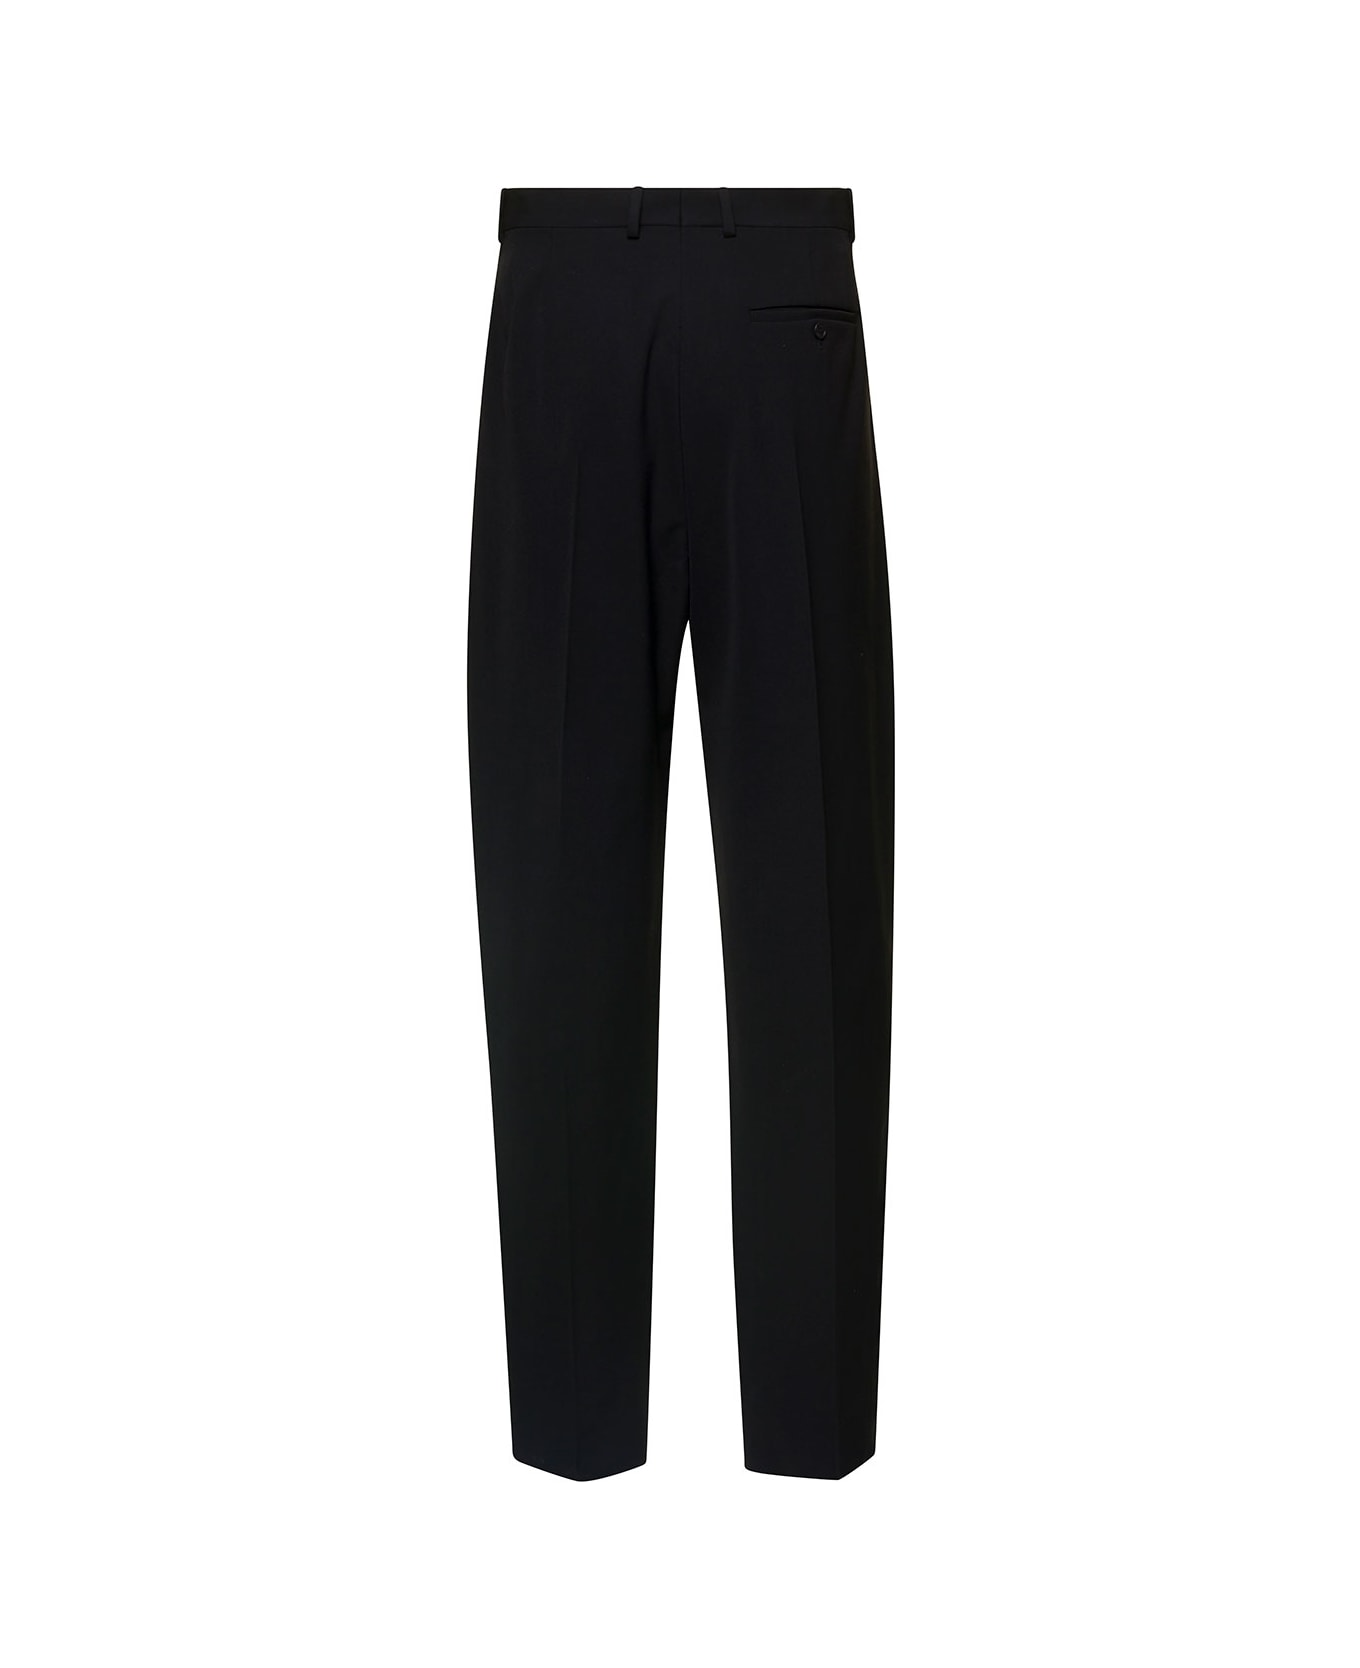 Balenciaga Tailored Pants - Black ボトムス